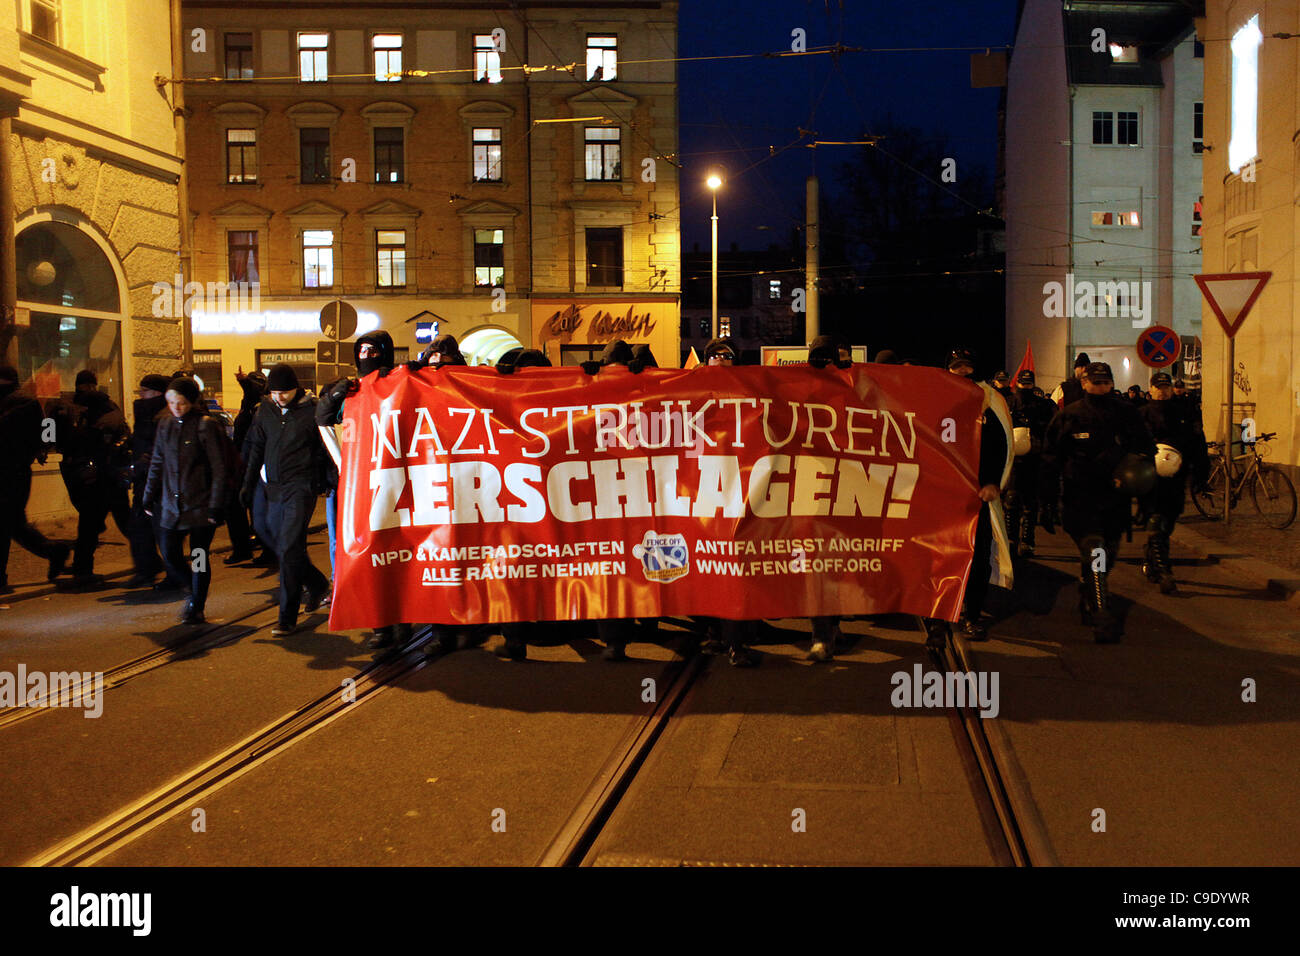 Los participantes antifascistas marcharon durante una manifestación contra el extremismo de derecha y. centro de la fiesta de extrema derecha NPD situado en Leipzig Alemania Foto de stock